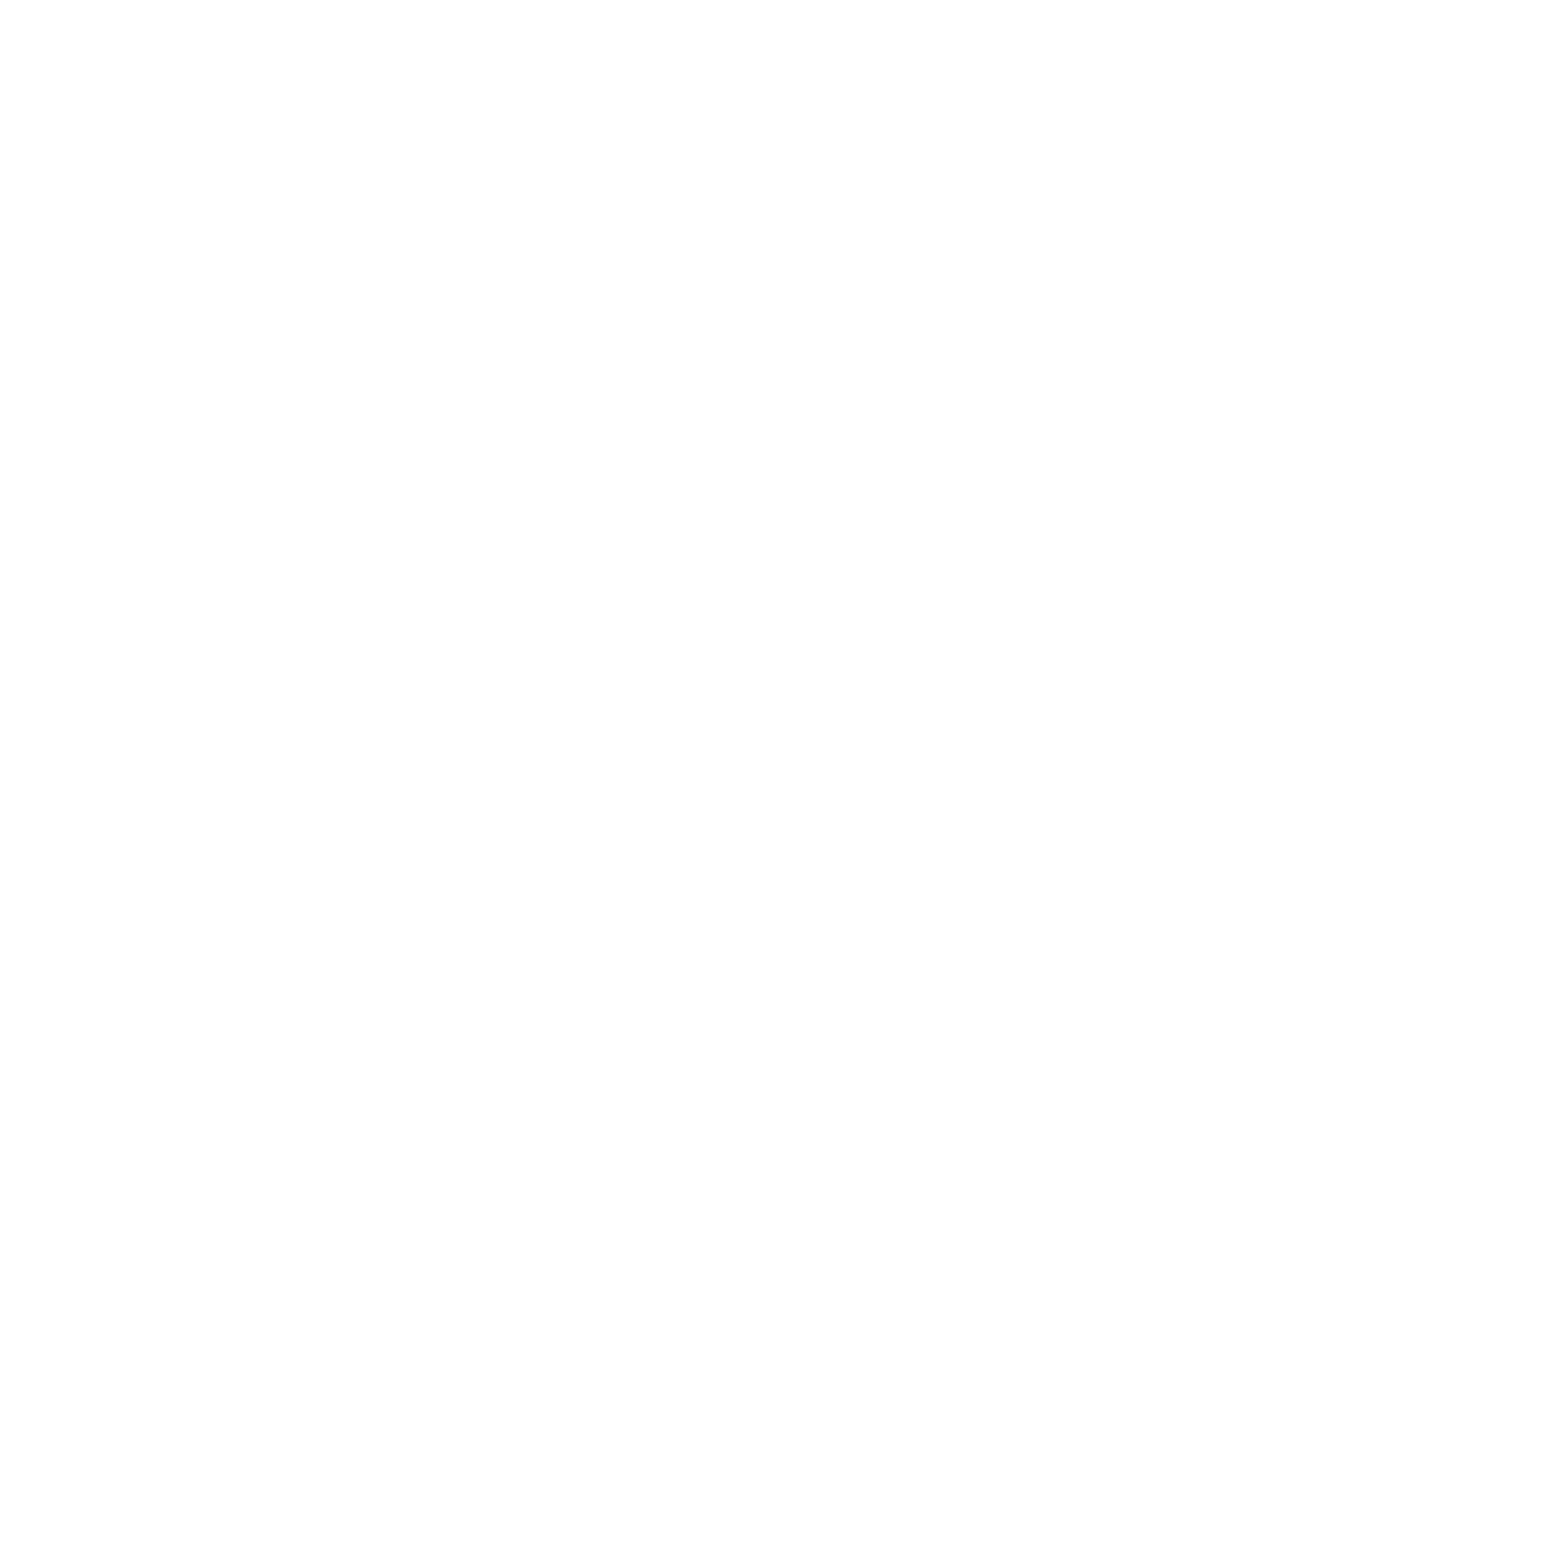 NeoGames logo pour fonds sombres (PNG transparent)